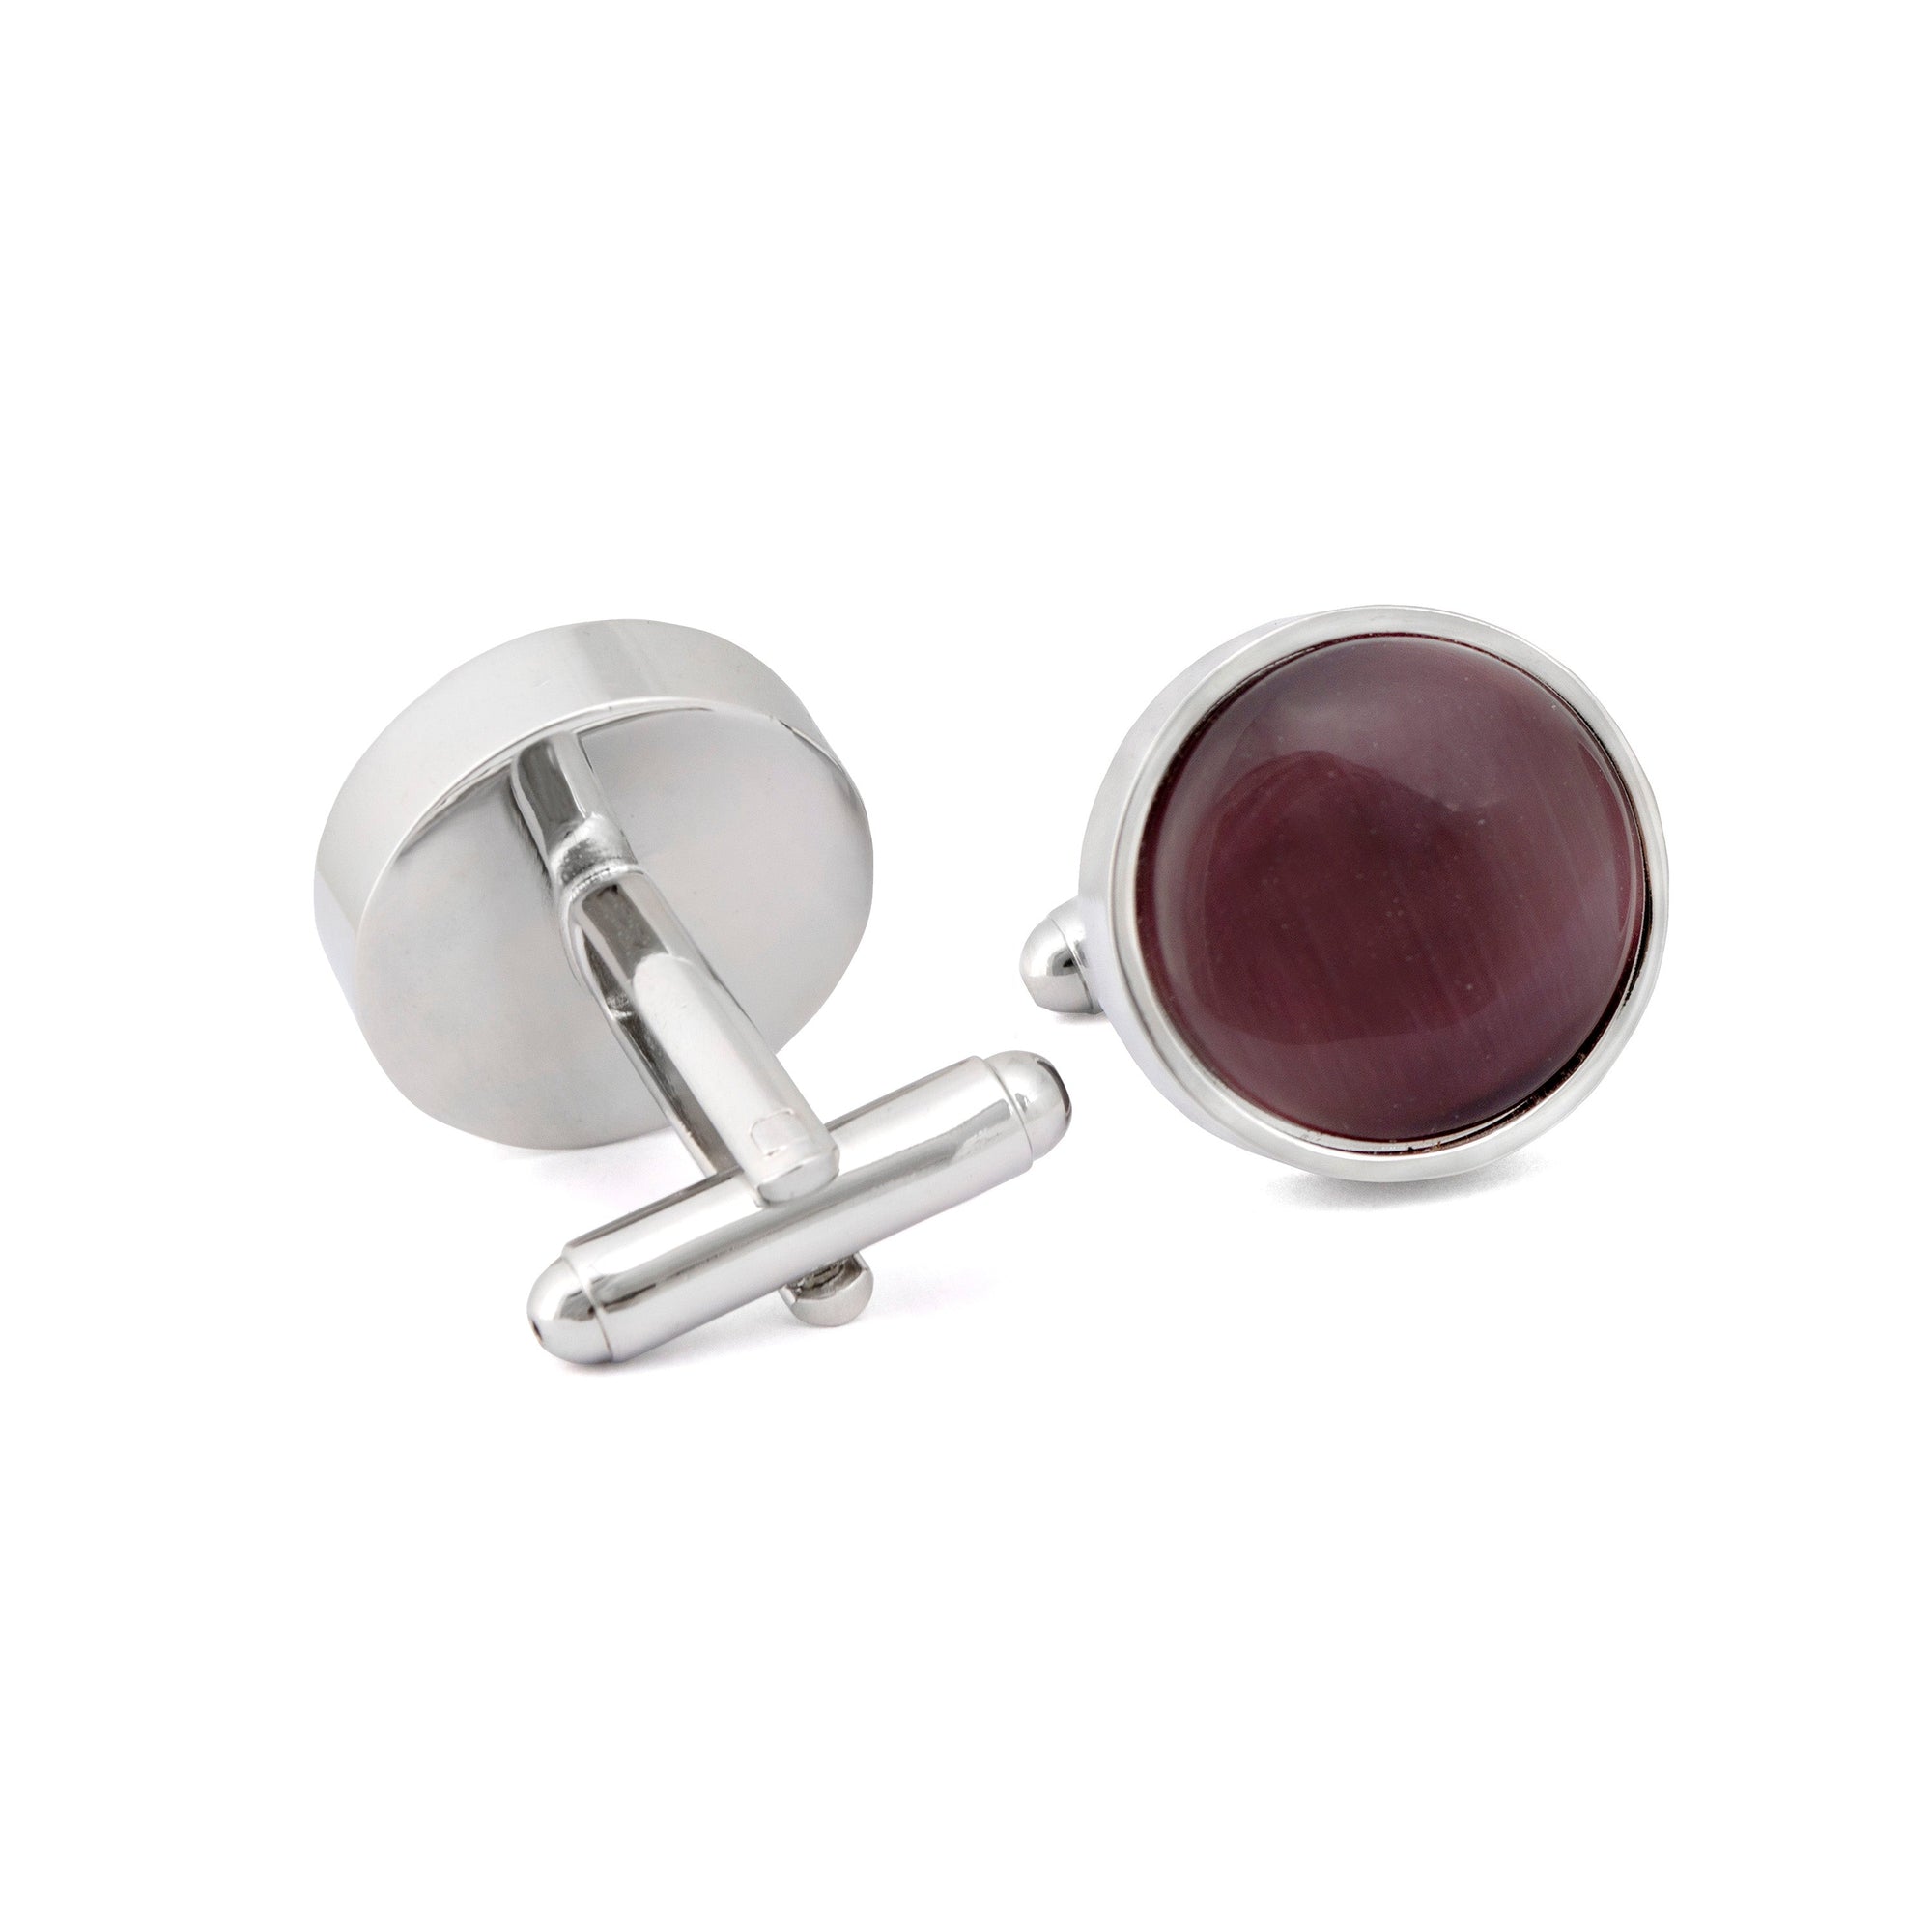 Round Purple Fibre Optic Glass Cufflinks-Cufflinks.com.sg